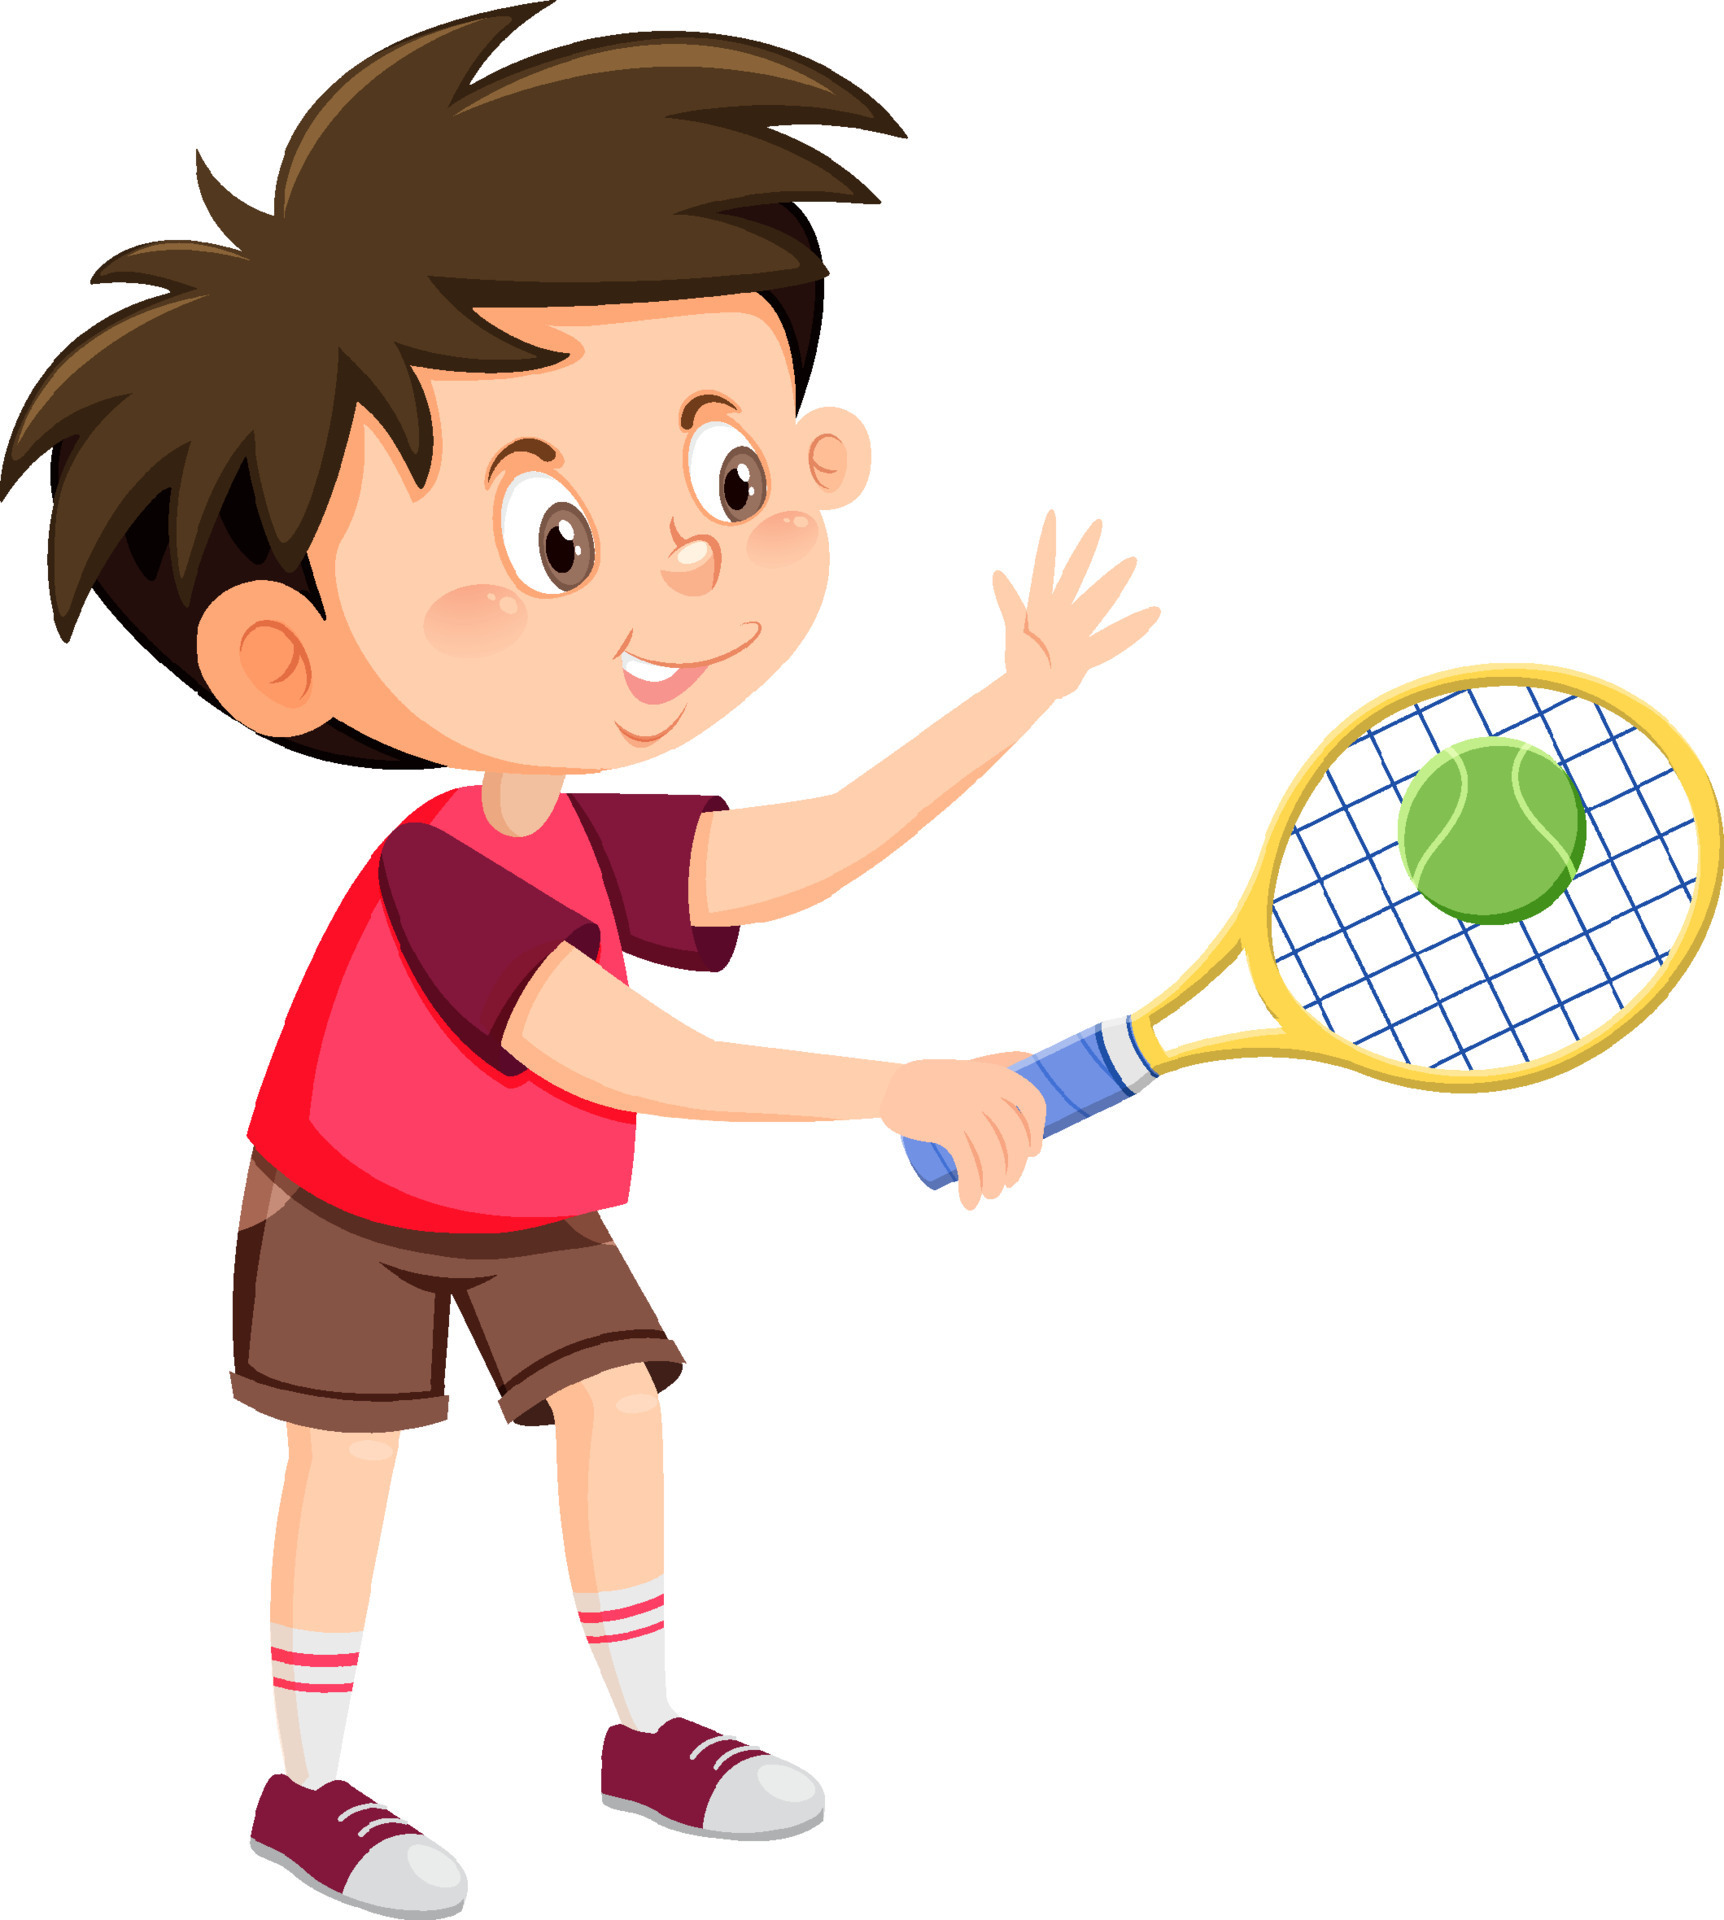 Cute boy tennis player cartoon 8191471 Vector Art at Vecteezy